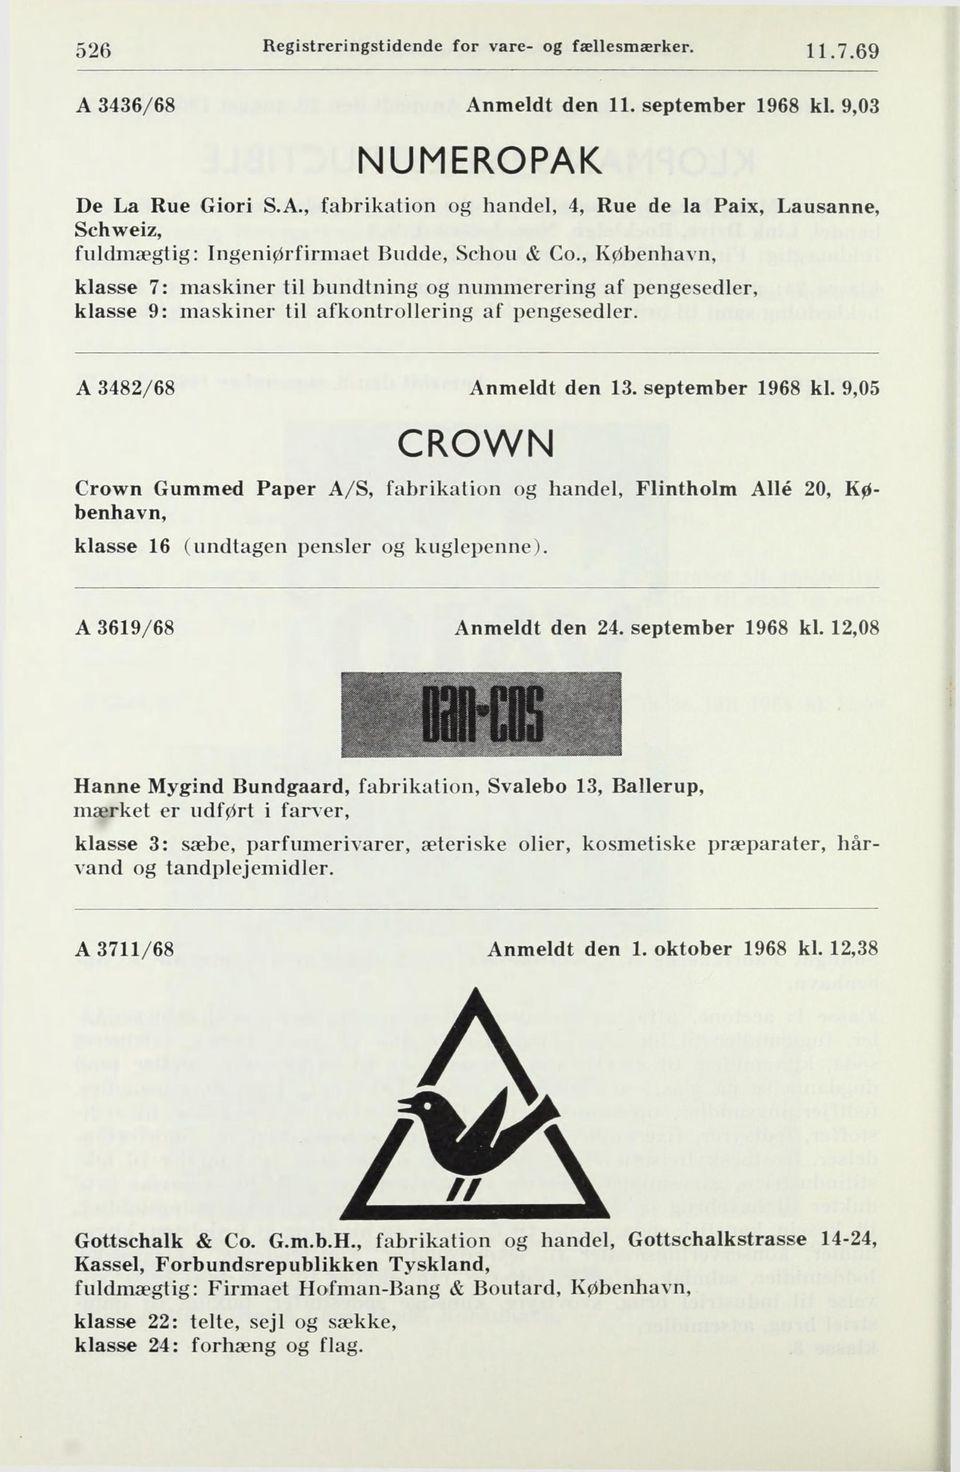 9,05 CROWN Crown Gummed Paper A/S, fabrikation og handel. Flintholm Allé 20, København, klasse 16 (undtagen pensler og kuglepenne). A 3619/68 Anmeldt den 24. september 1968 kl.